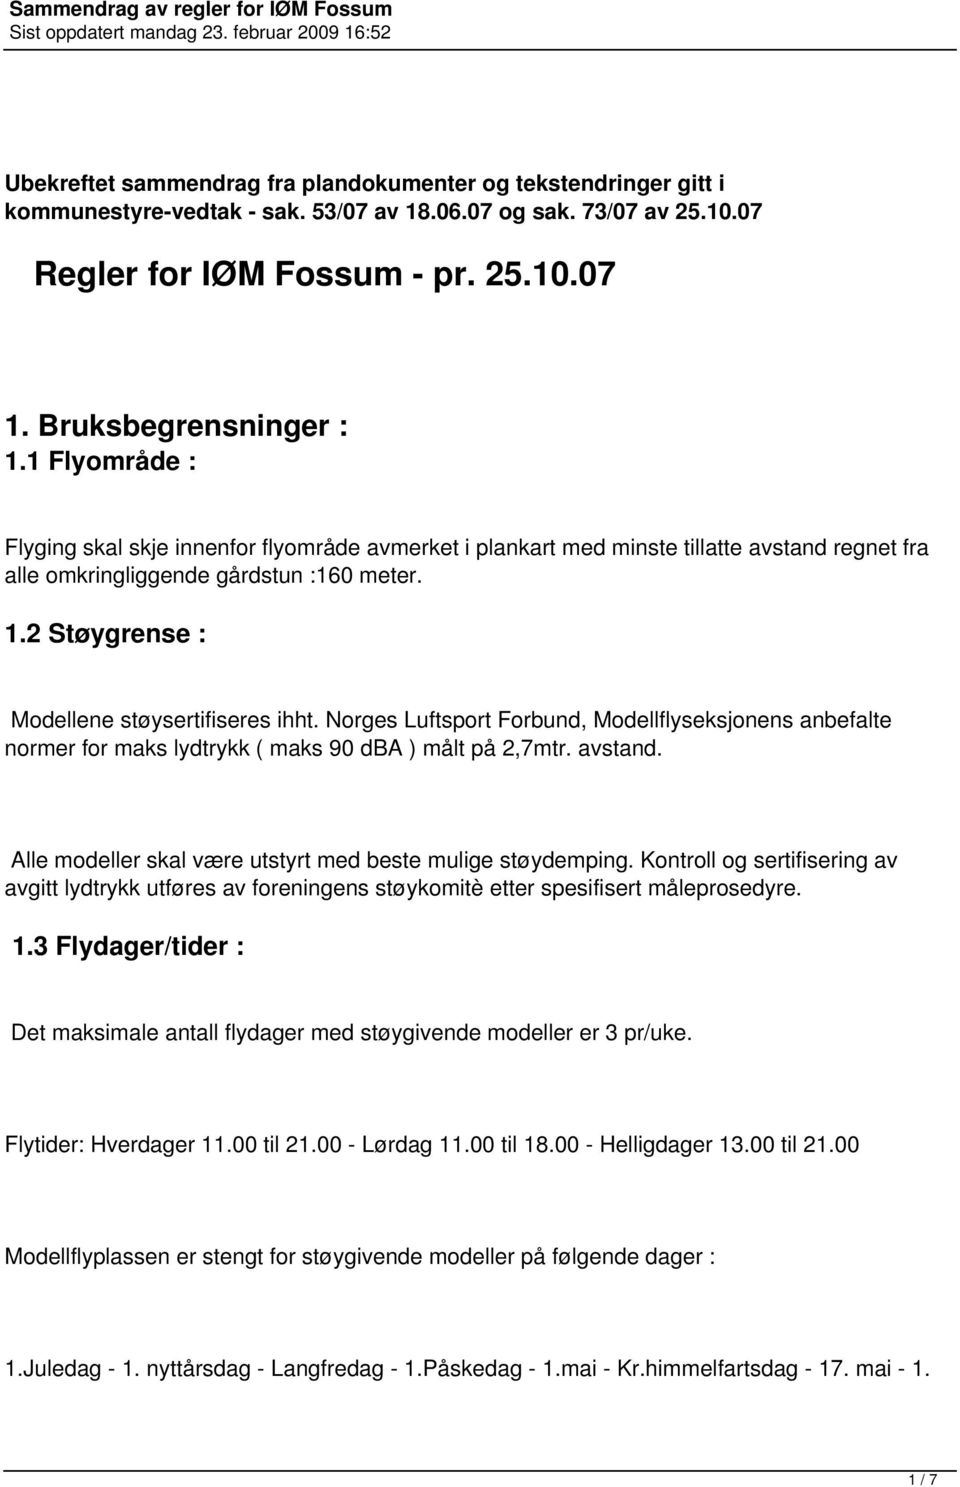 2 Støygrense : Modellene støysertifiseres ihht. Norges Luftsport Forbund, Modellflyseksjonens anbefalte normer for maks lydtrykk ( maks 90 dba ) målt på 2,7mtr. avstand.